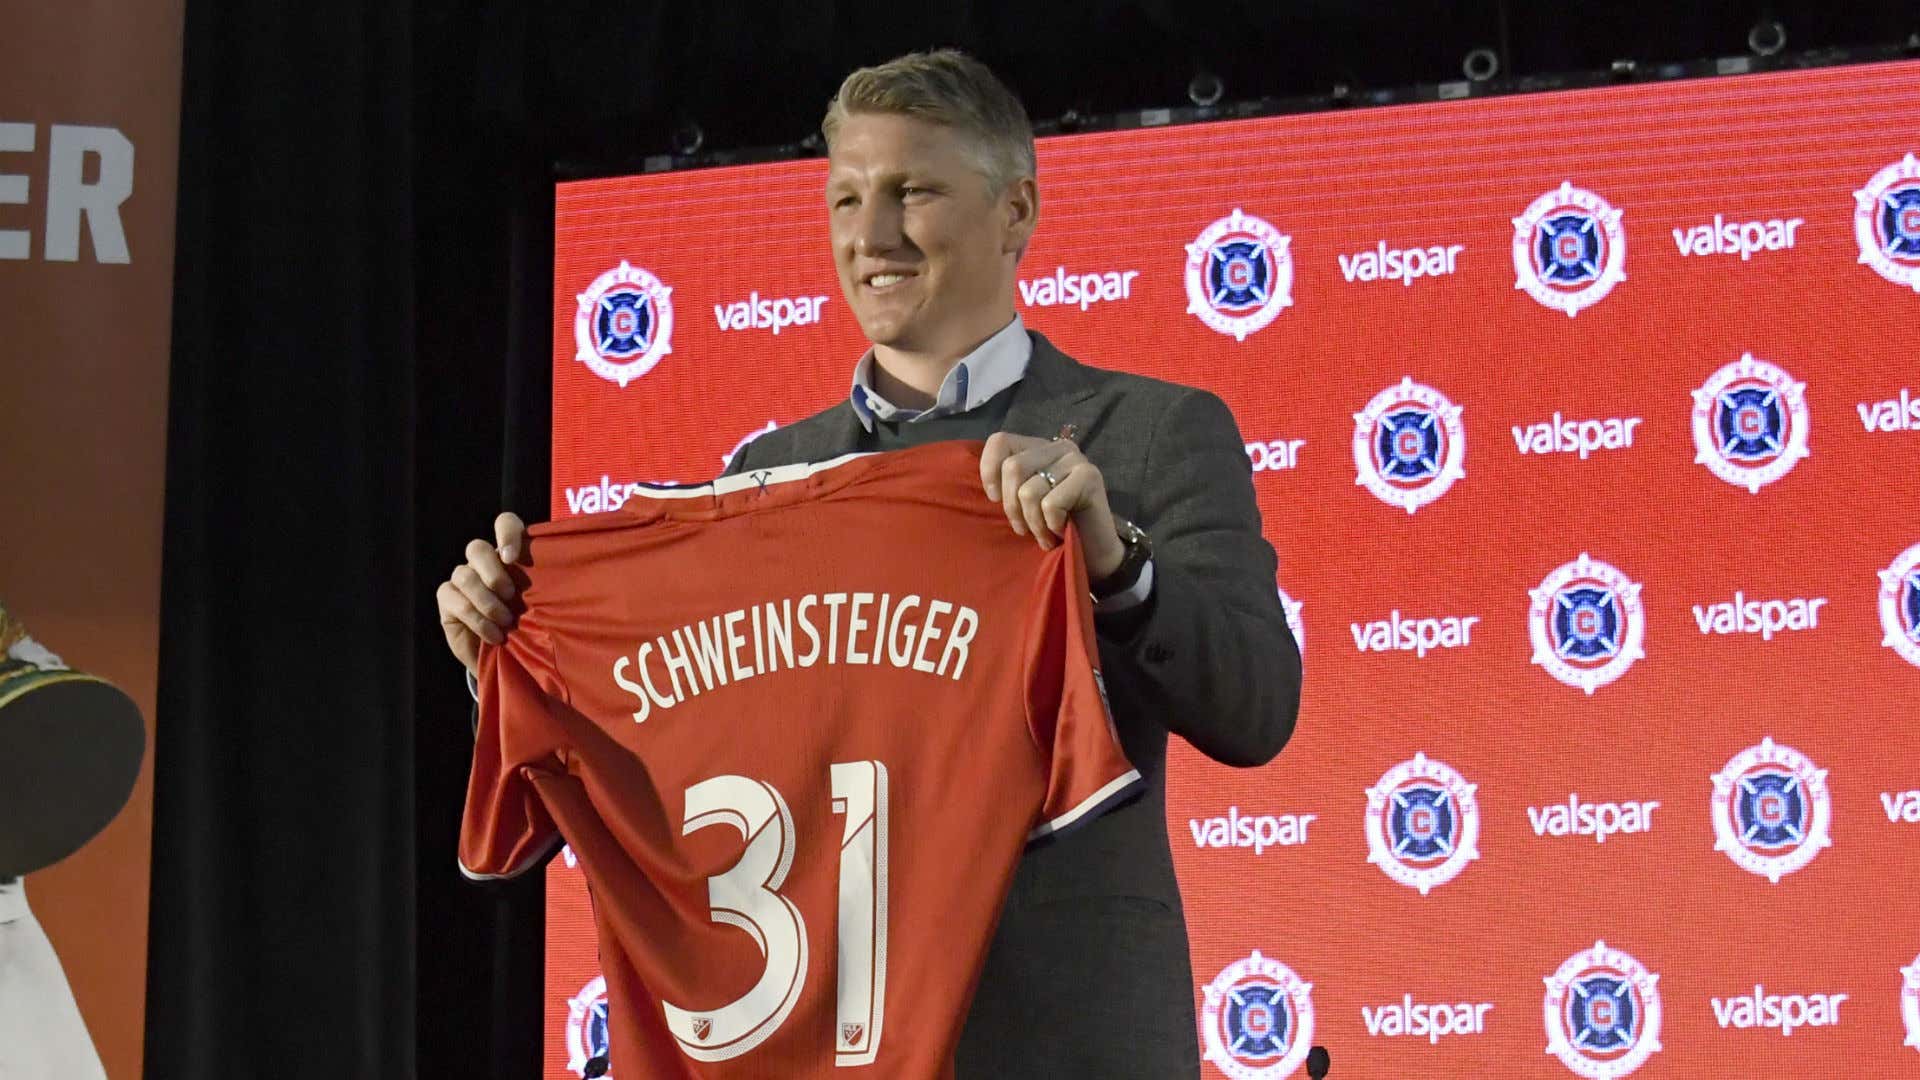 Bastian Schweinsteiger Chicago Fire shirt 032917